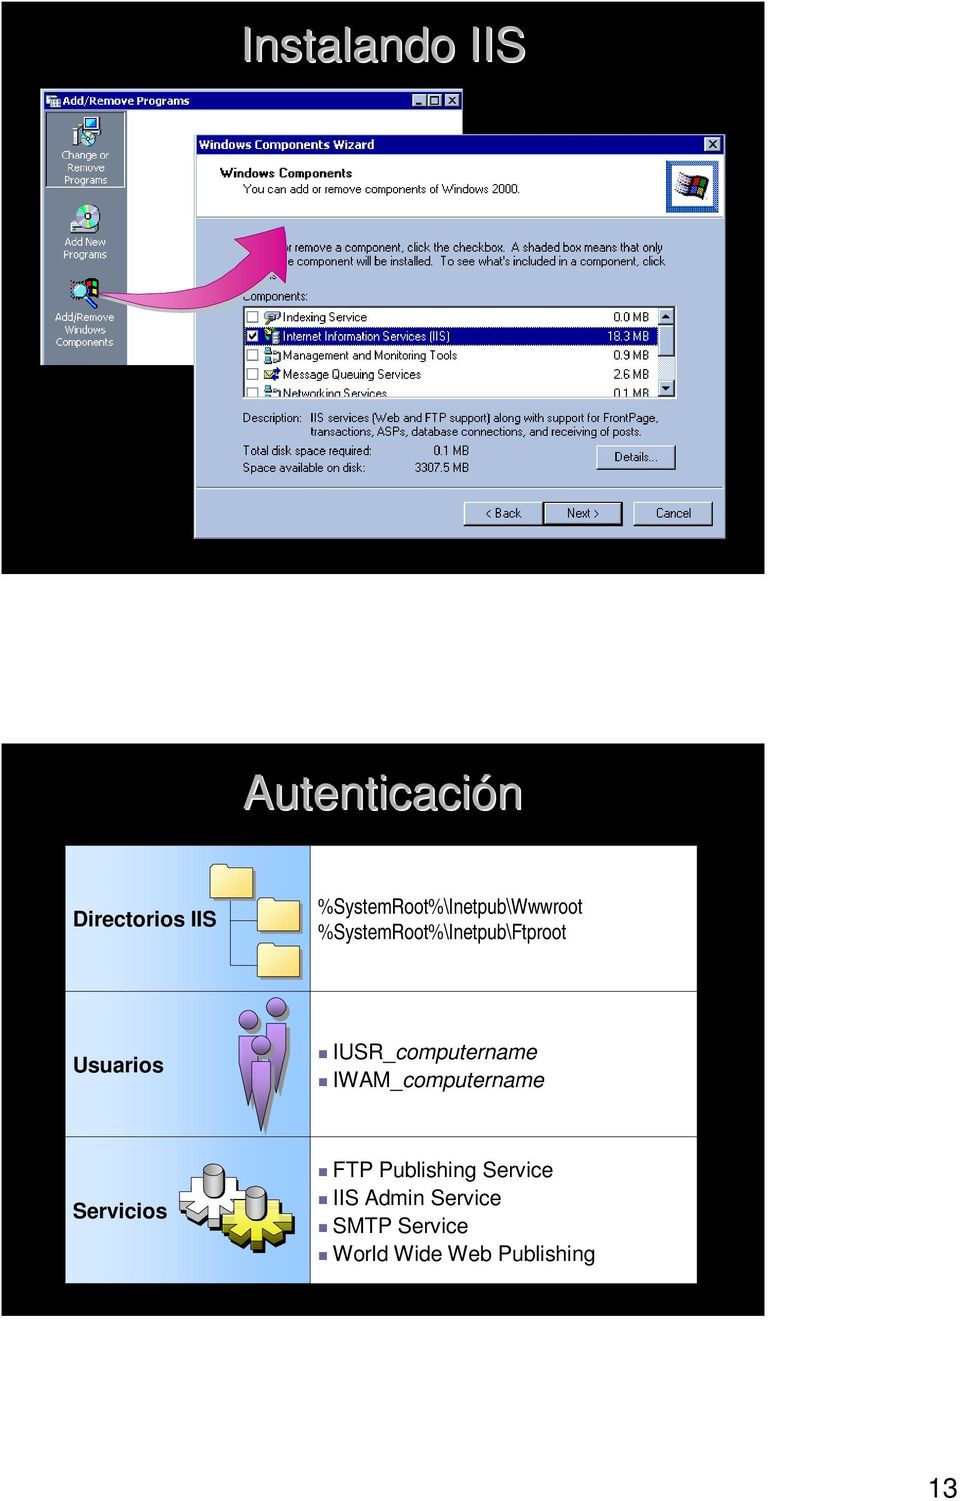 Usuarios " IUSR_computername " IWAM_computername Servicios "